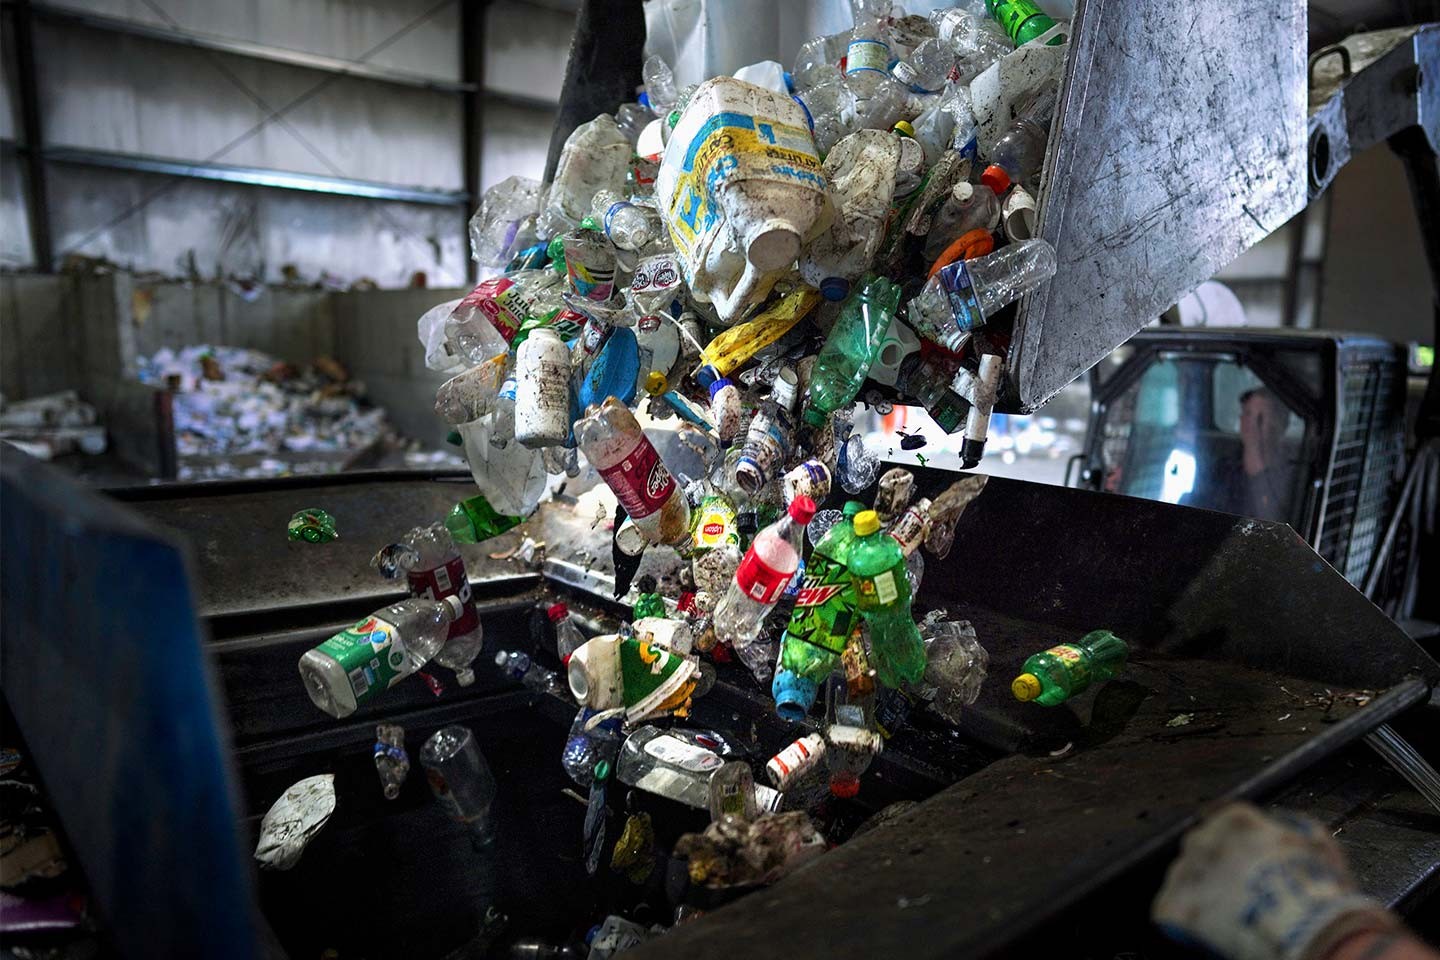 Recyclage du plastique